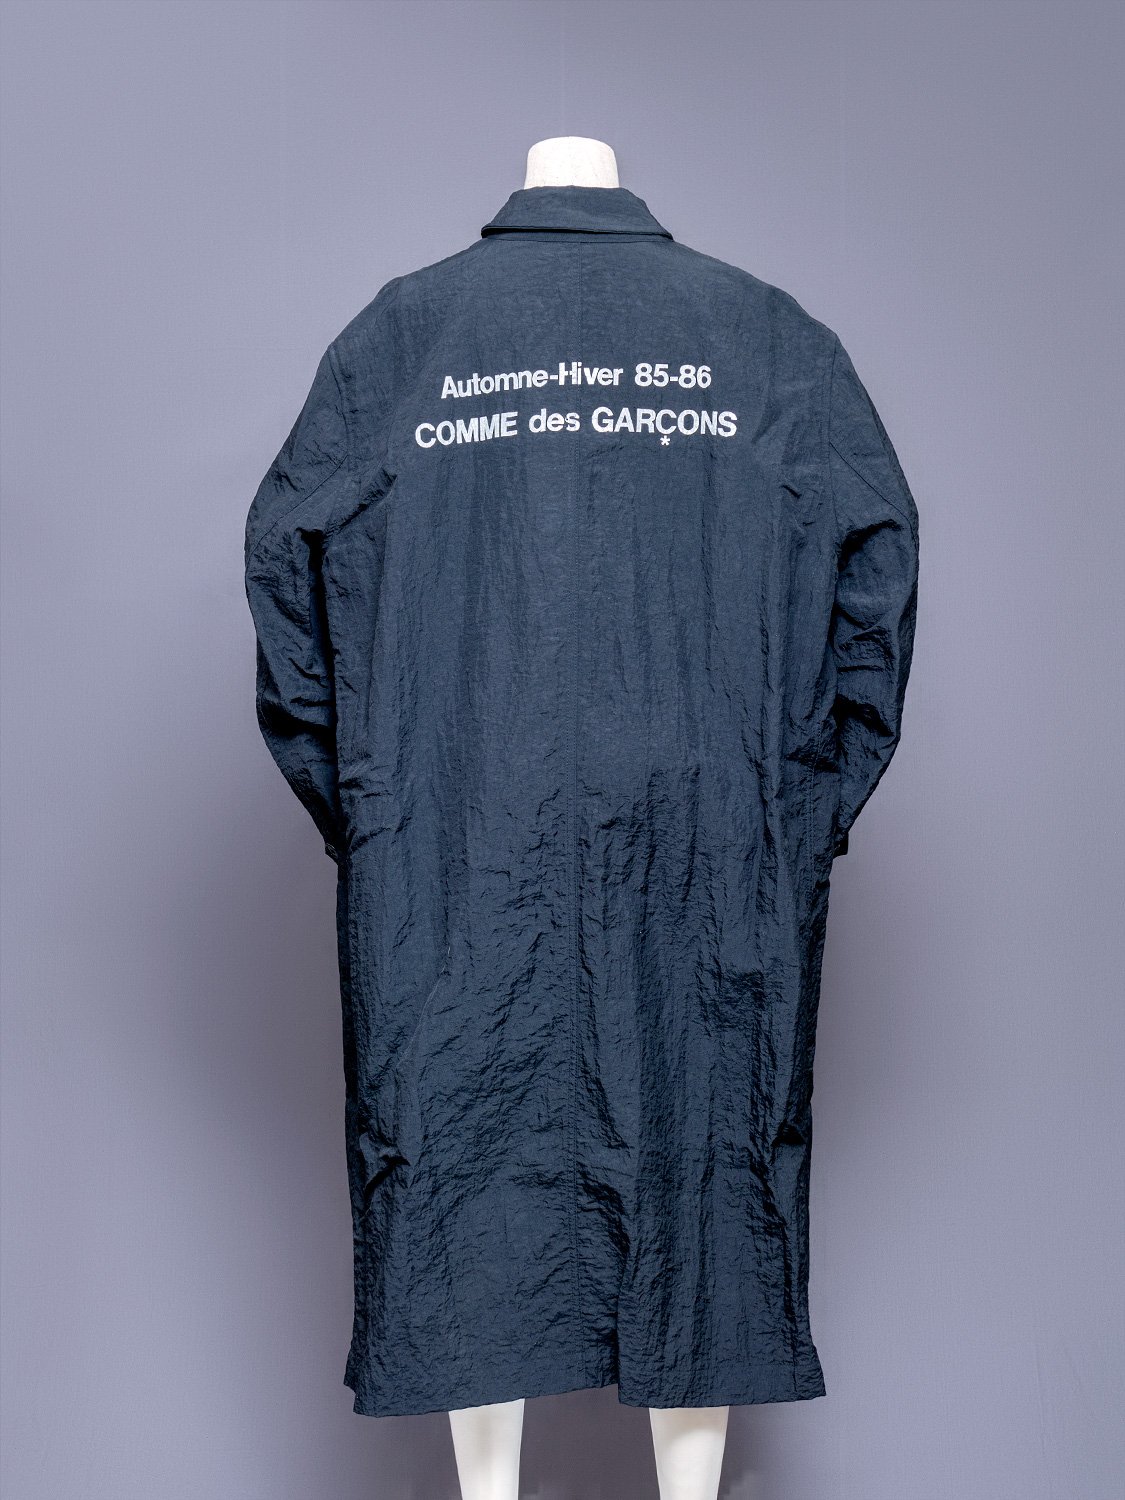 Comme Des Garcons Automne-Hiver 1985-1986 Staff Coat | Japanese